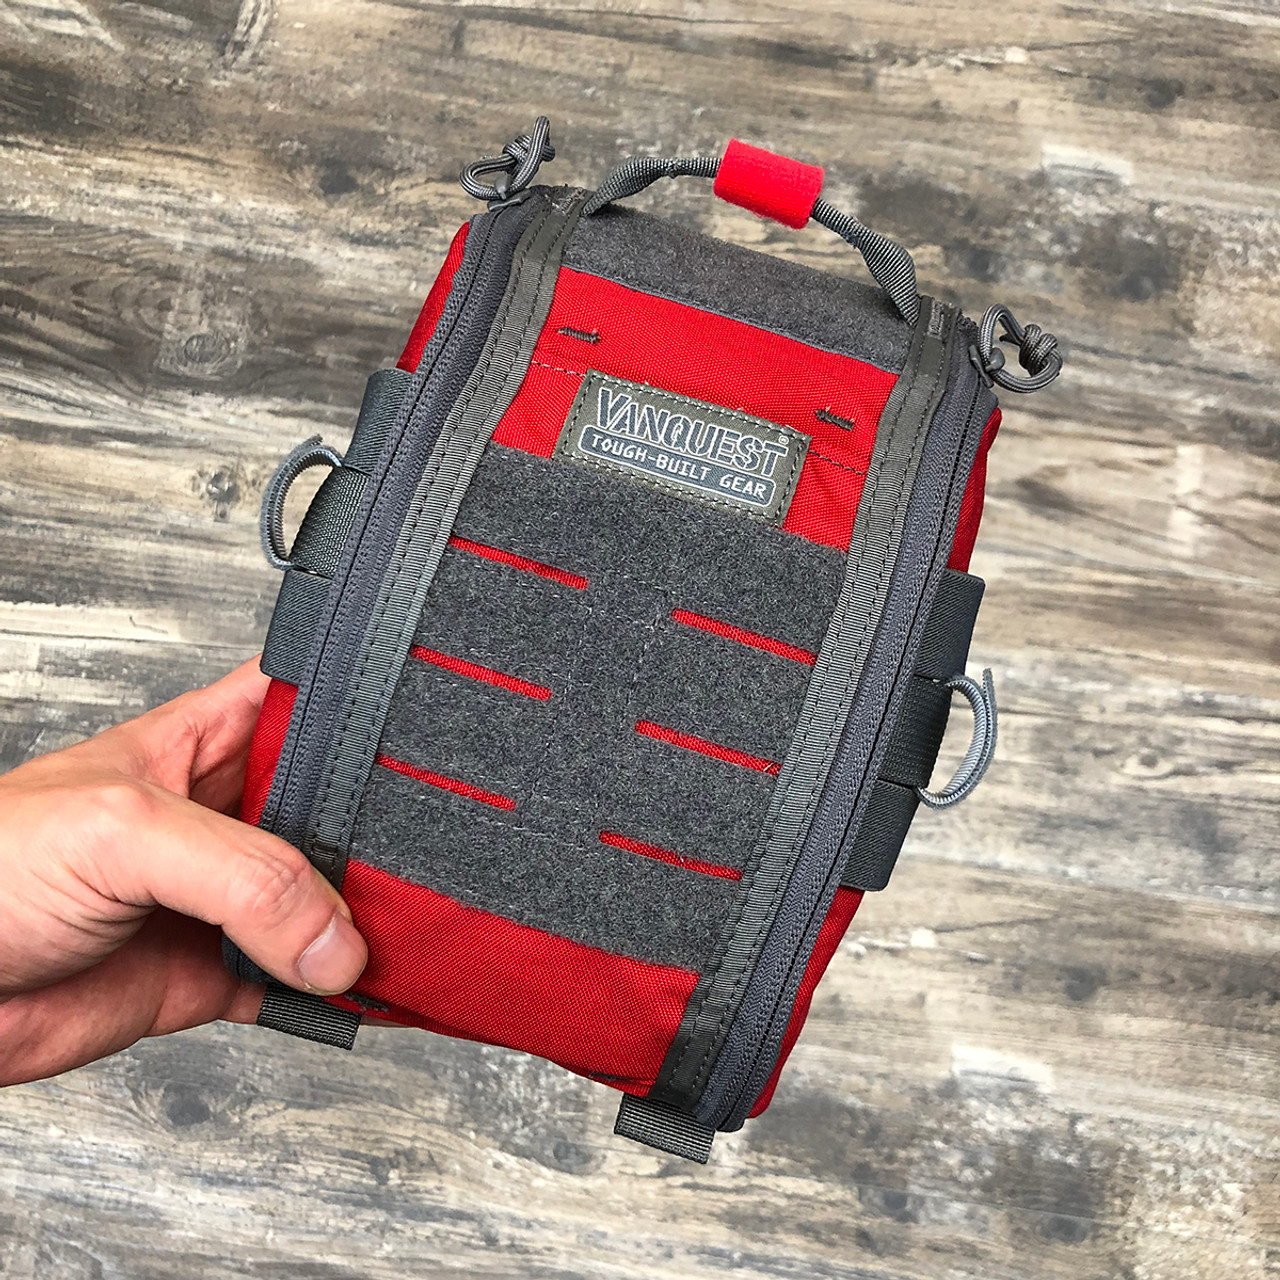 FATPack 5X8 (Gen-2): First Aid Trauma Pack - Vanquest Tough-Built Gear